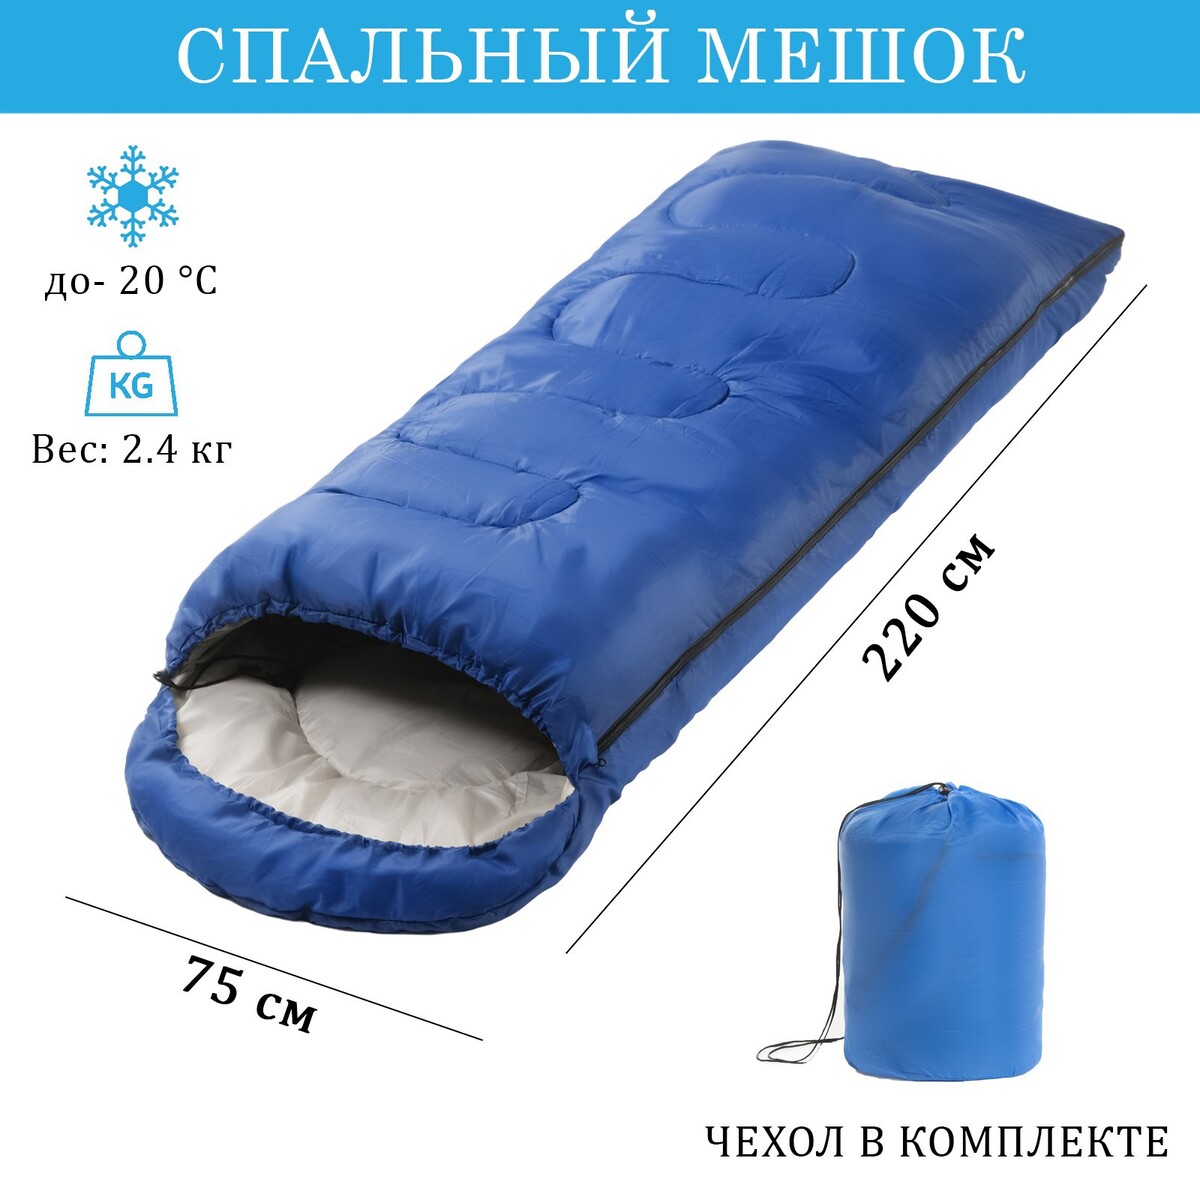 Спальный мешок туристический, 220 х 75 см, до -20 градусов, 700 г/м2, синий спальный мешок туристический atemi quilt 250rn 250 г м2 5 с правый